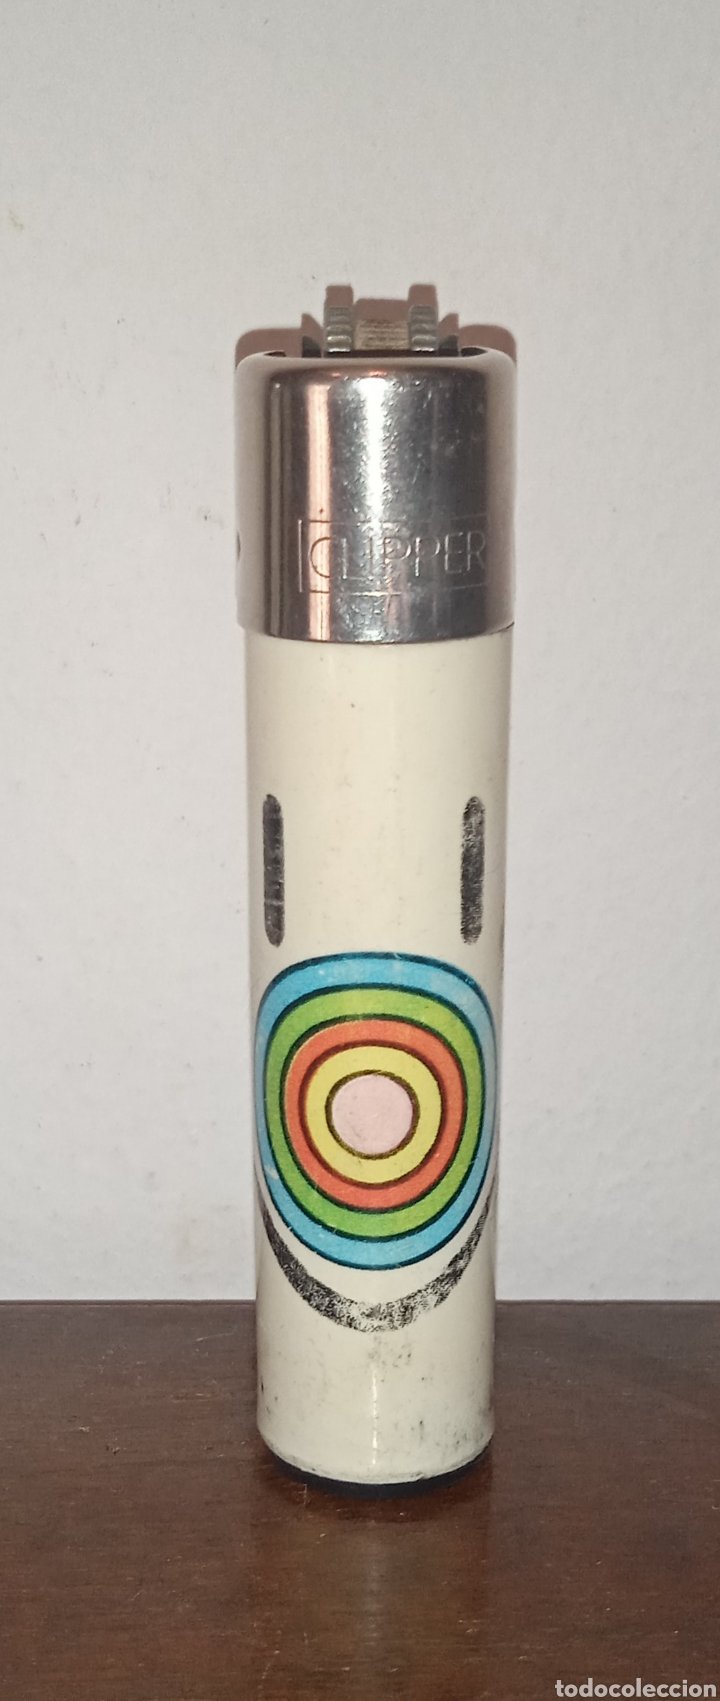 porta clipper sony con su caja - Buy Antique and collectible lighters on  todocoleccion